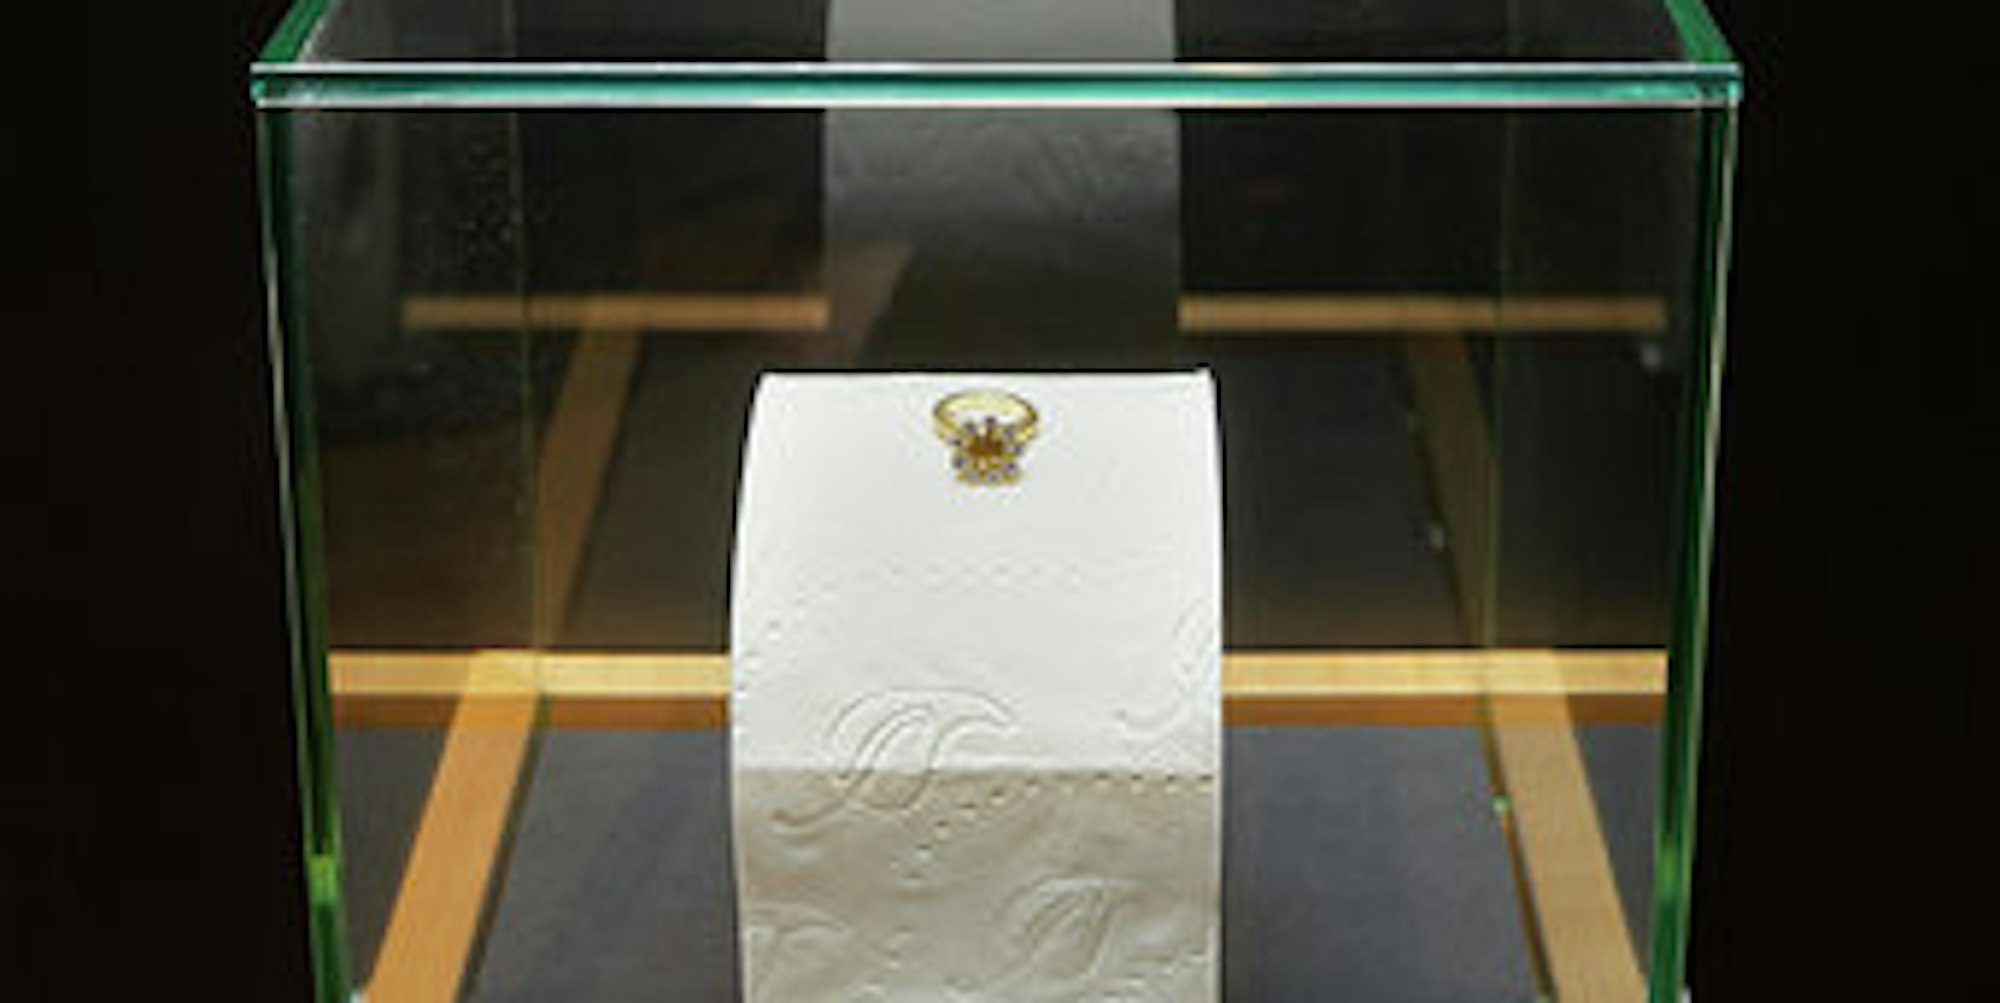 Klorollen Exponat in Leipziger Museum